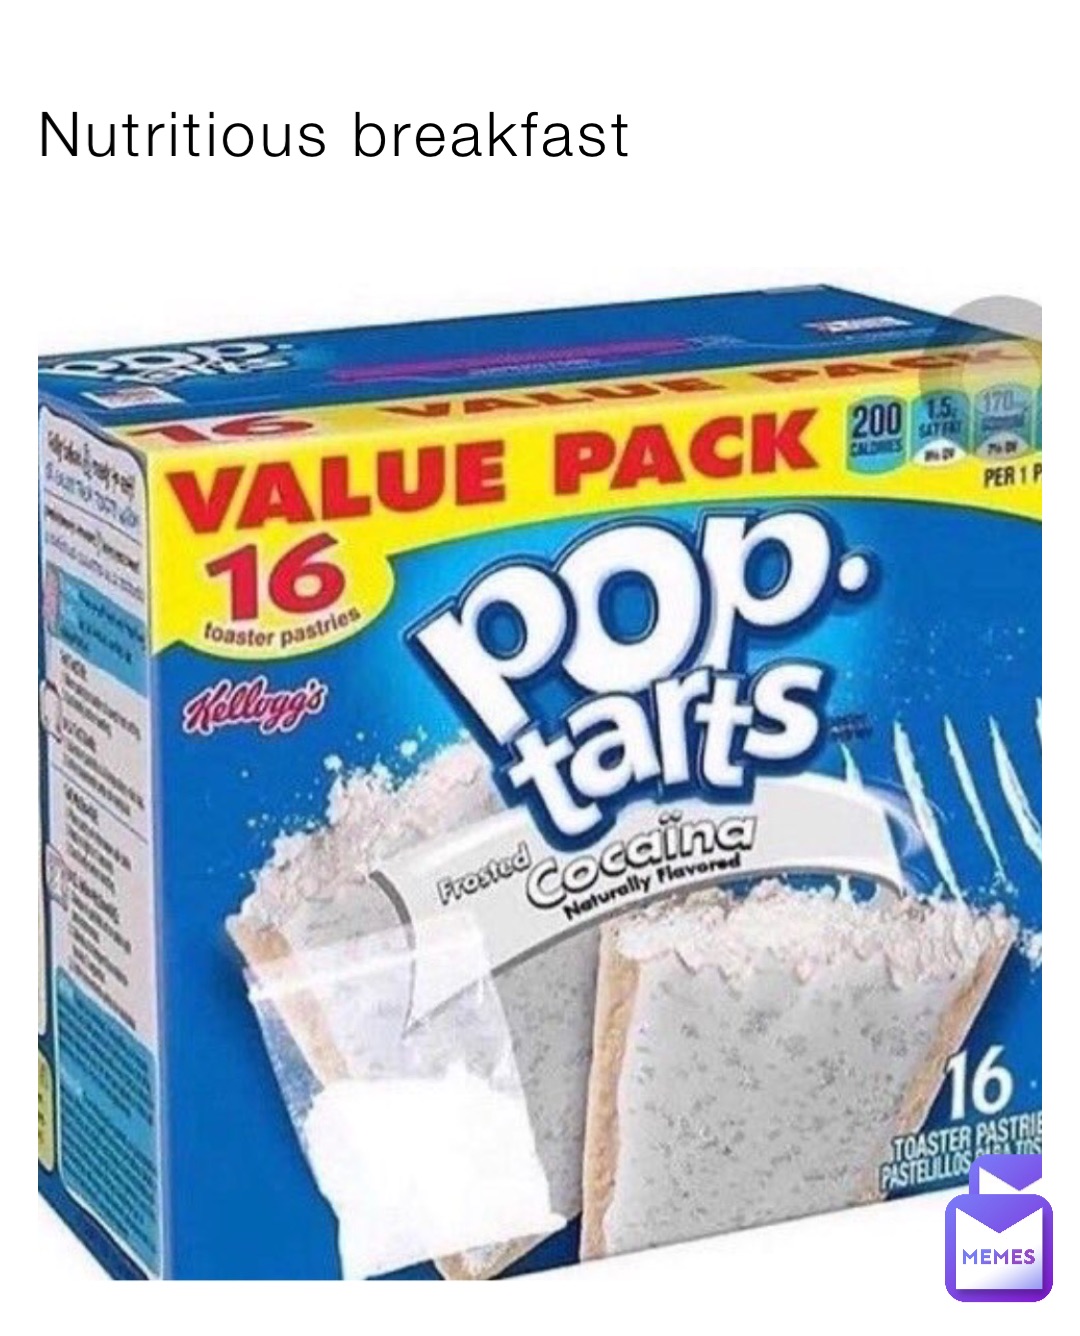 Nutritious breakfast